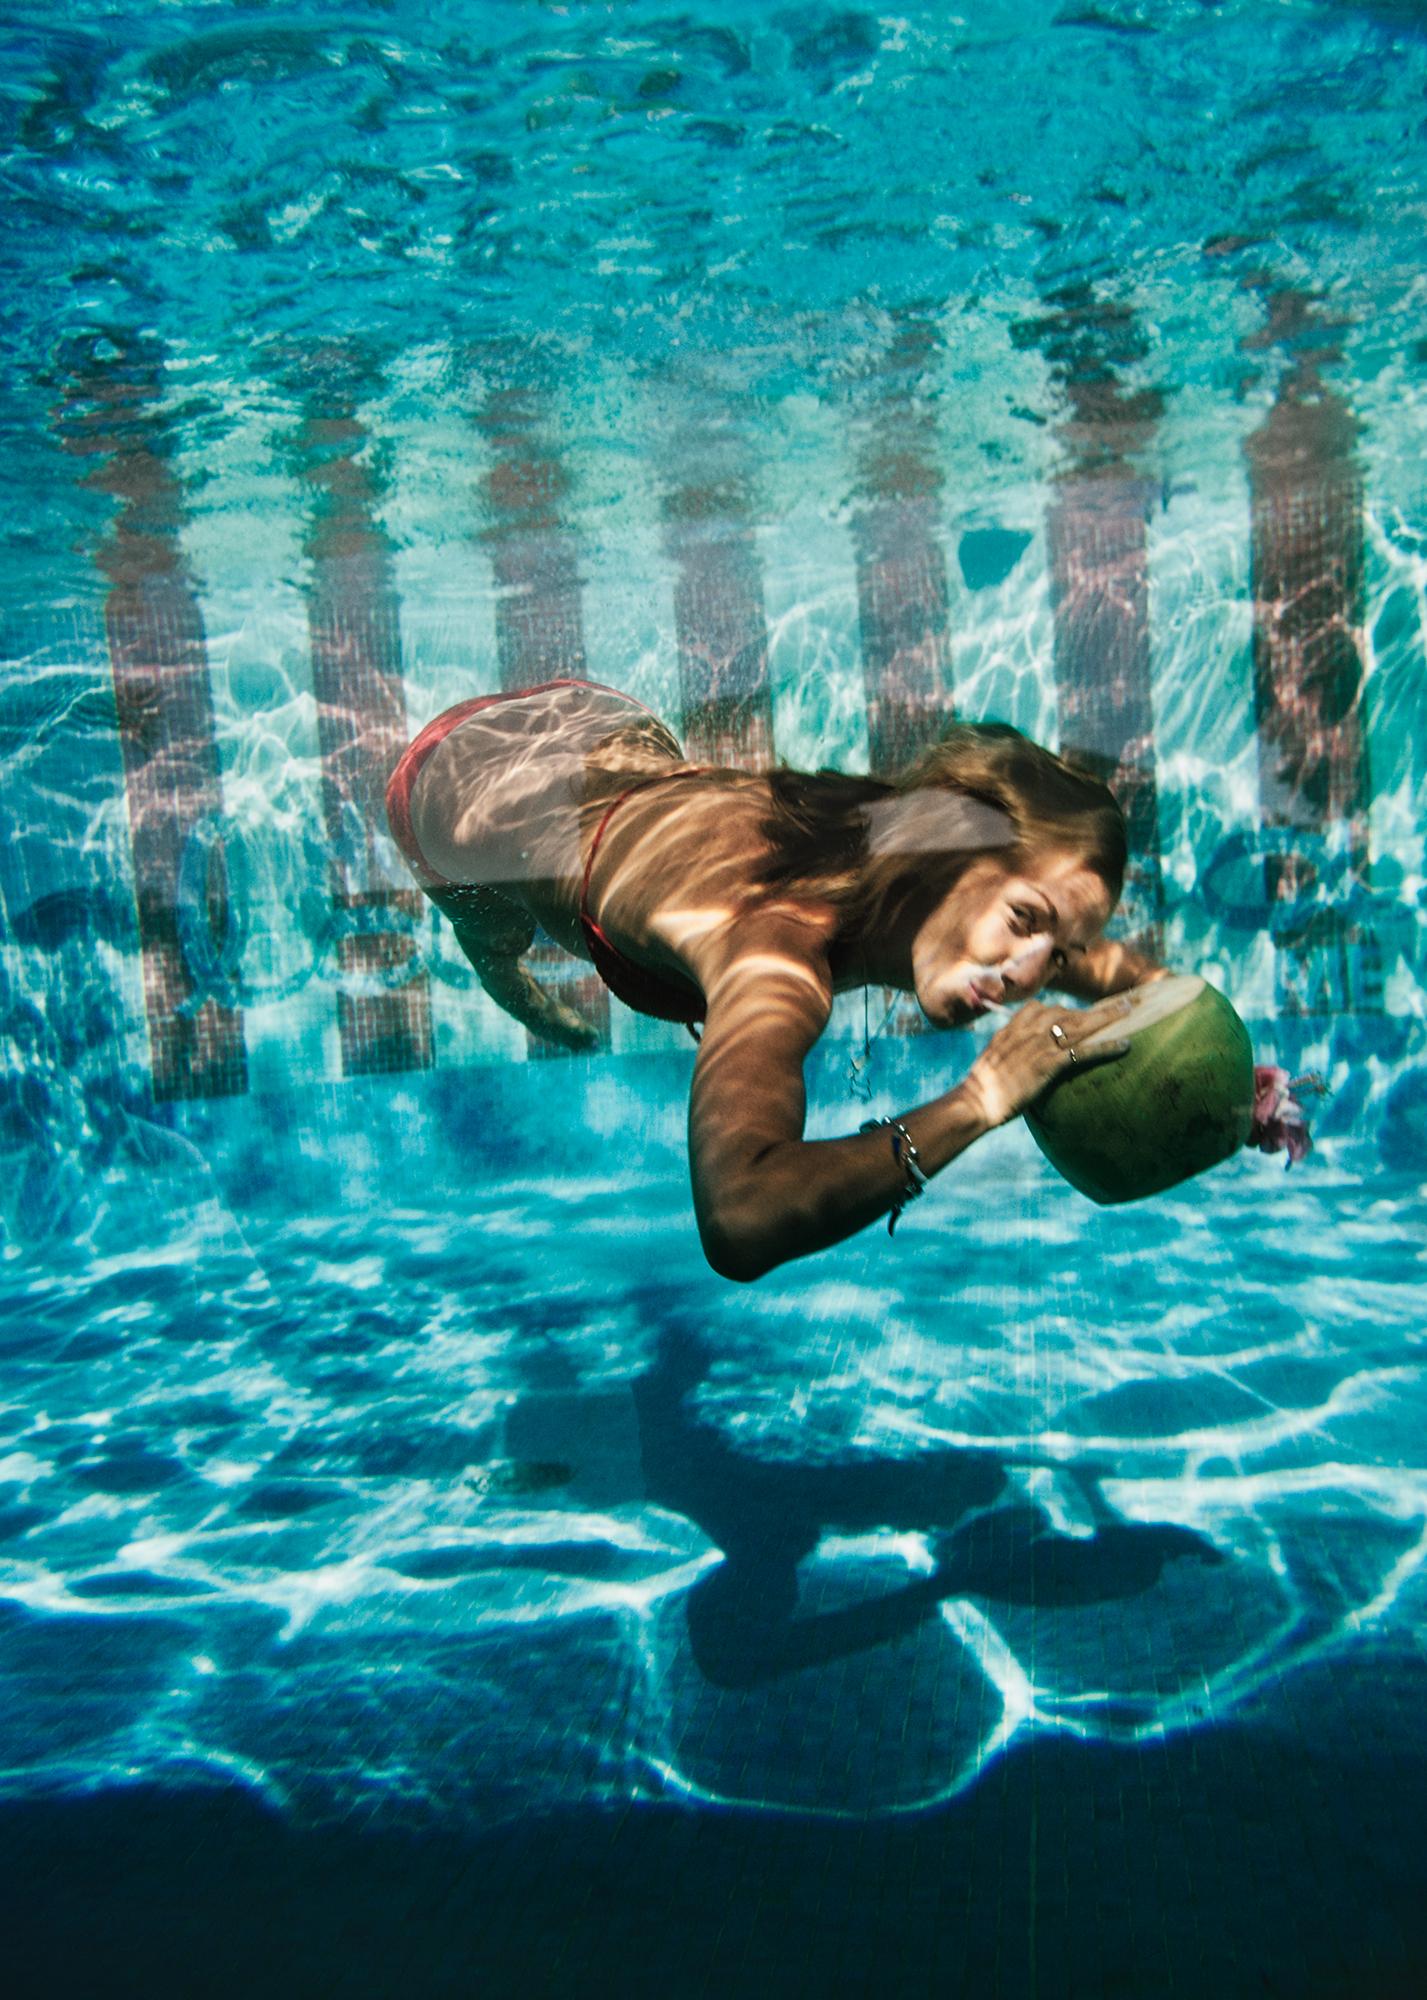 Slim Aarons Figurative Photograph - Underwater Drink, Las Brisas, Estate Edition, Acapulco, Mexico, early 1970s